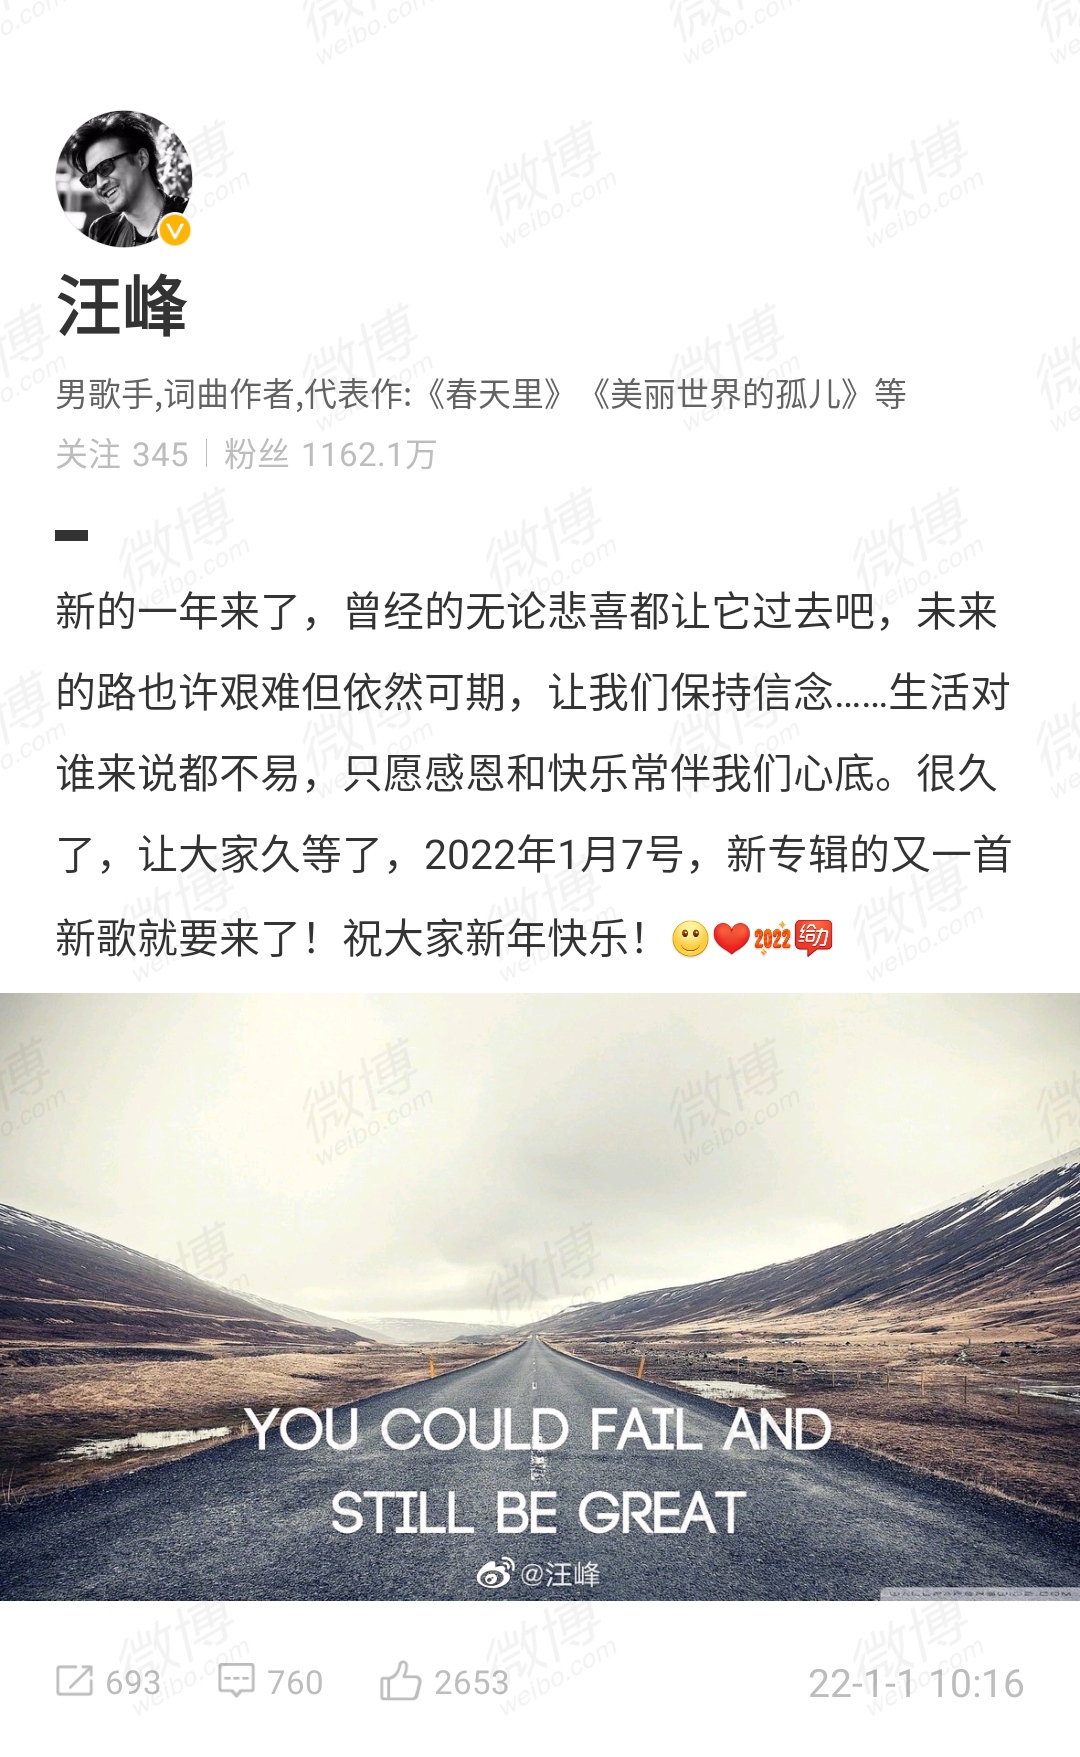 Bài đăng thông báo phát hành nhạc mới vào ngày 07/01/2022 của Uông Phong